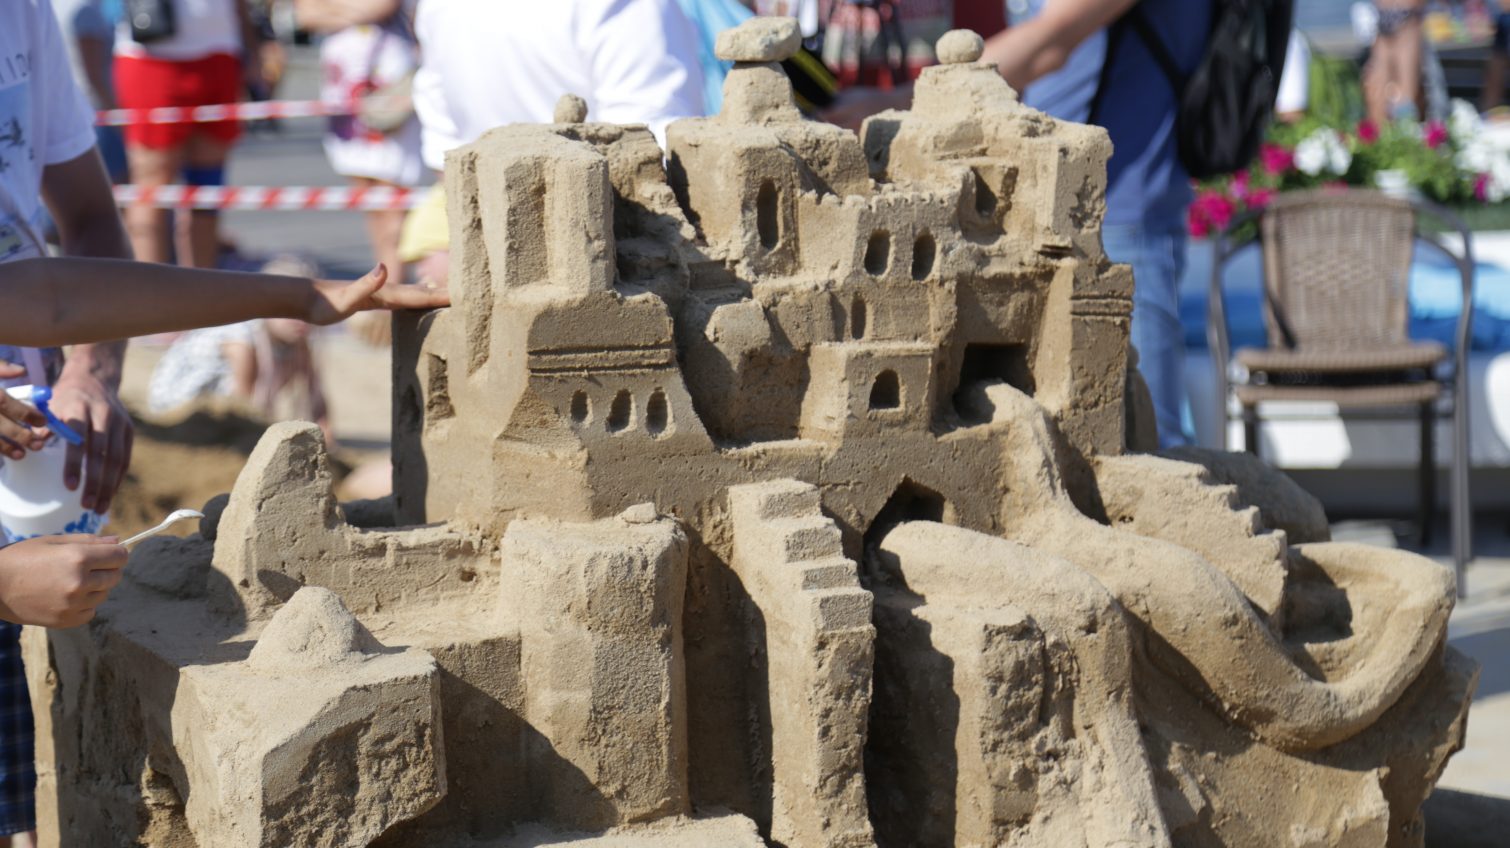 Битва скульптур: на Ланжероне создали из песка огромный замок, русалку и морское чудовище (фото) «фото»